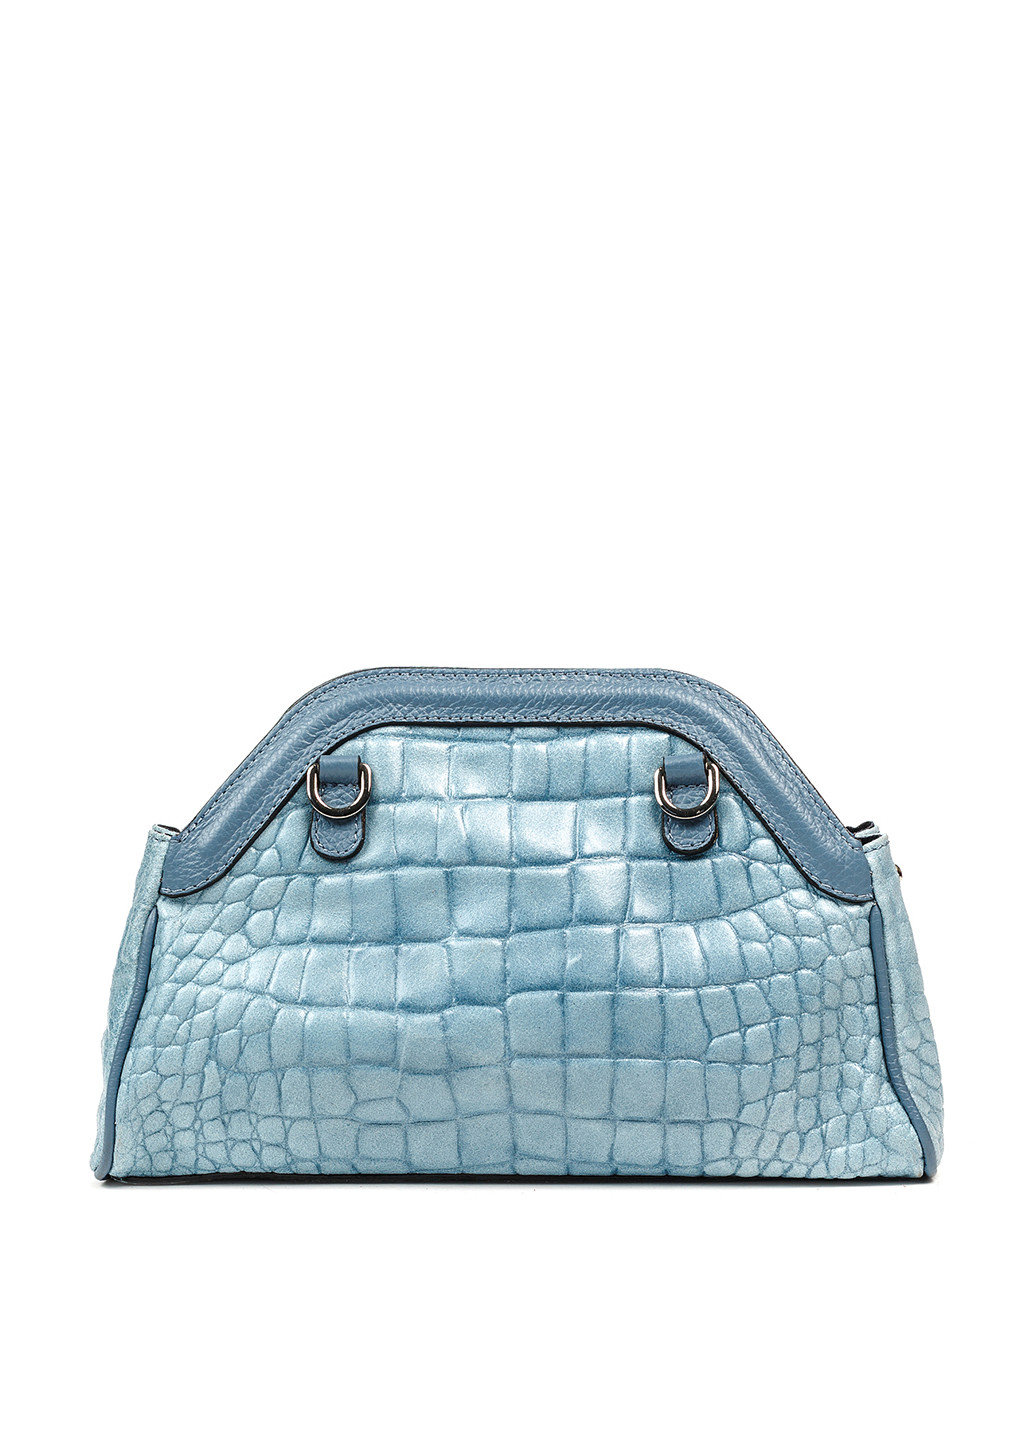 Сумка Italian Bags кросс боди анималистичная синяя кэжуал